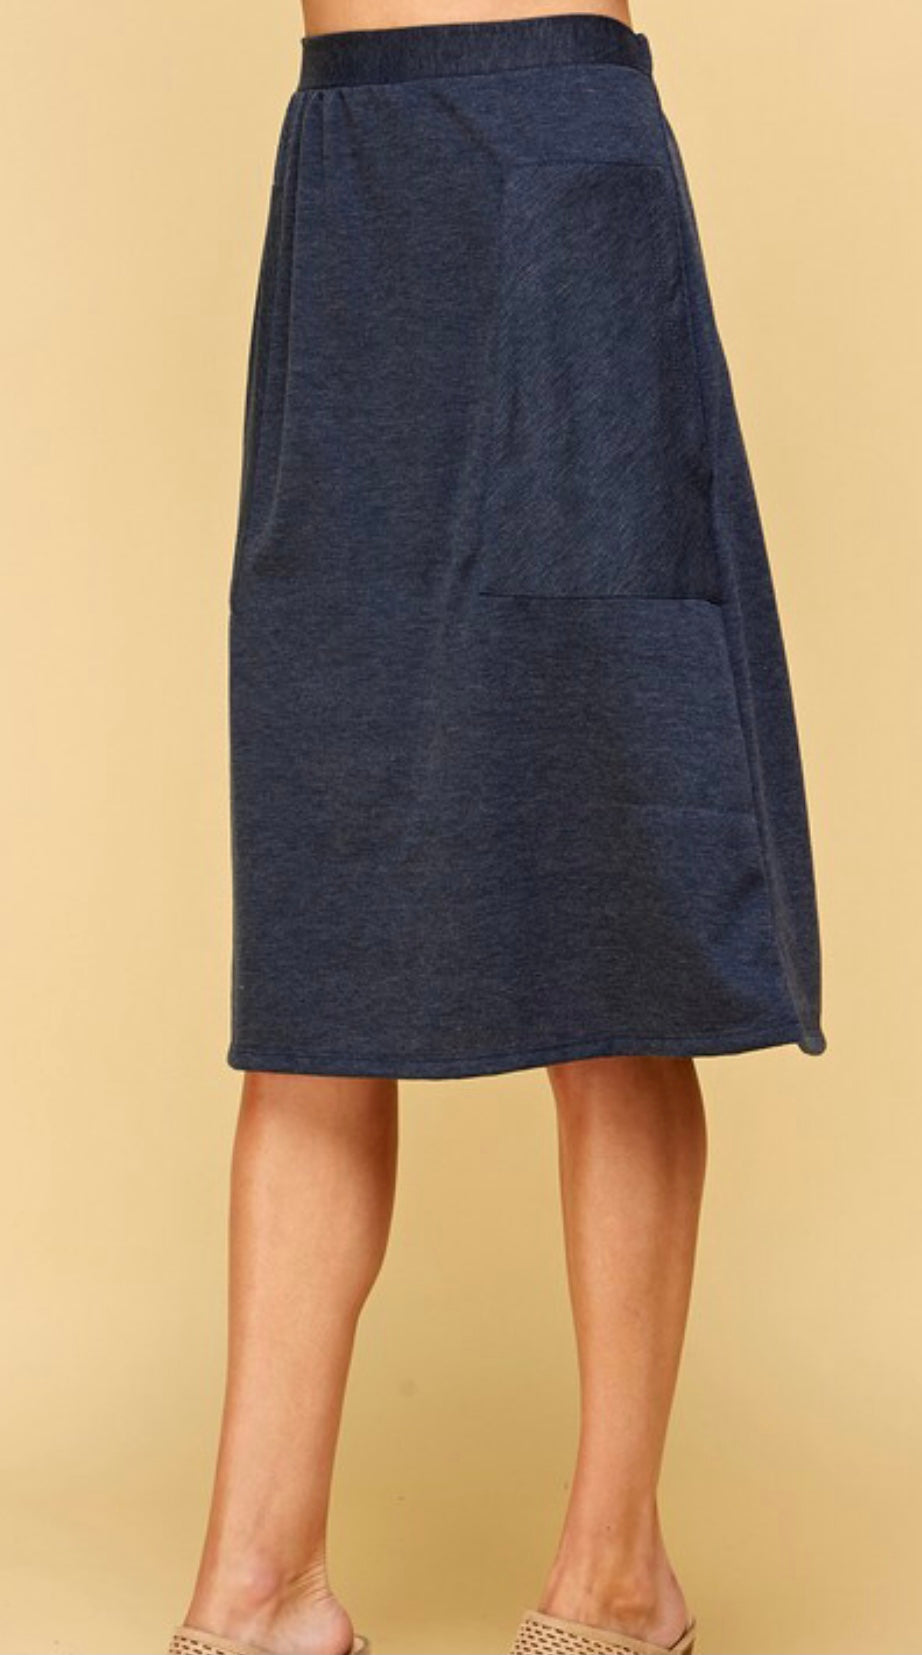 27 Dark denim polyester blend skirt